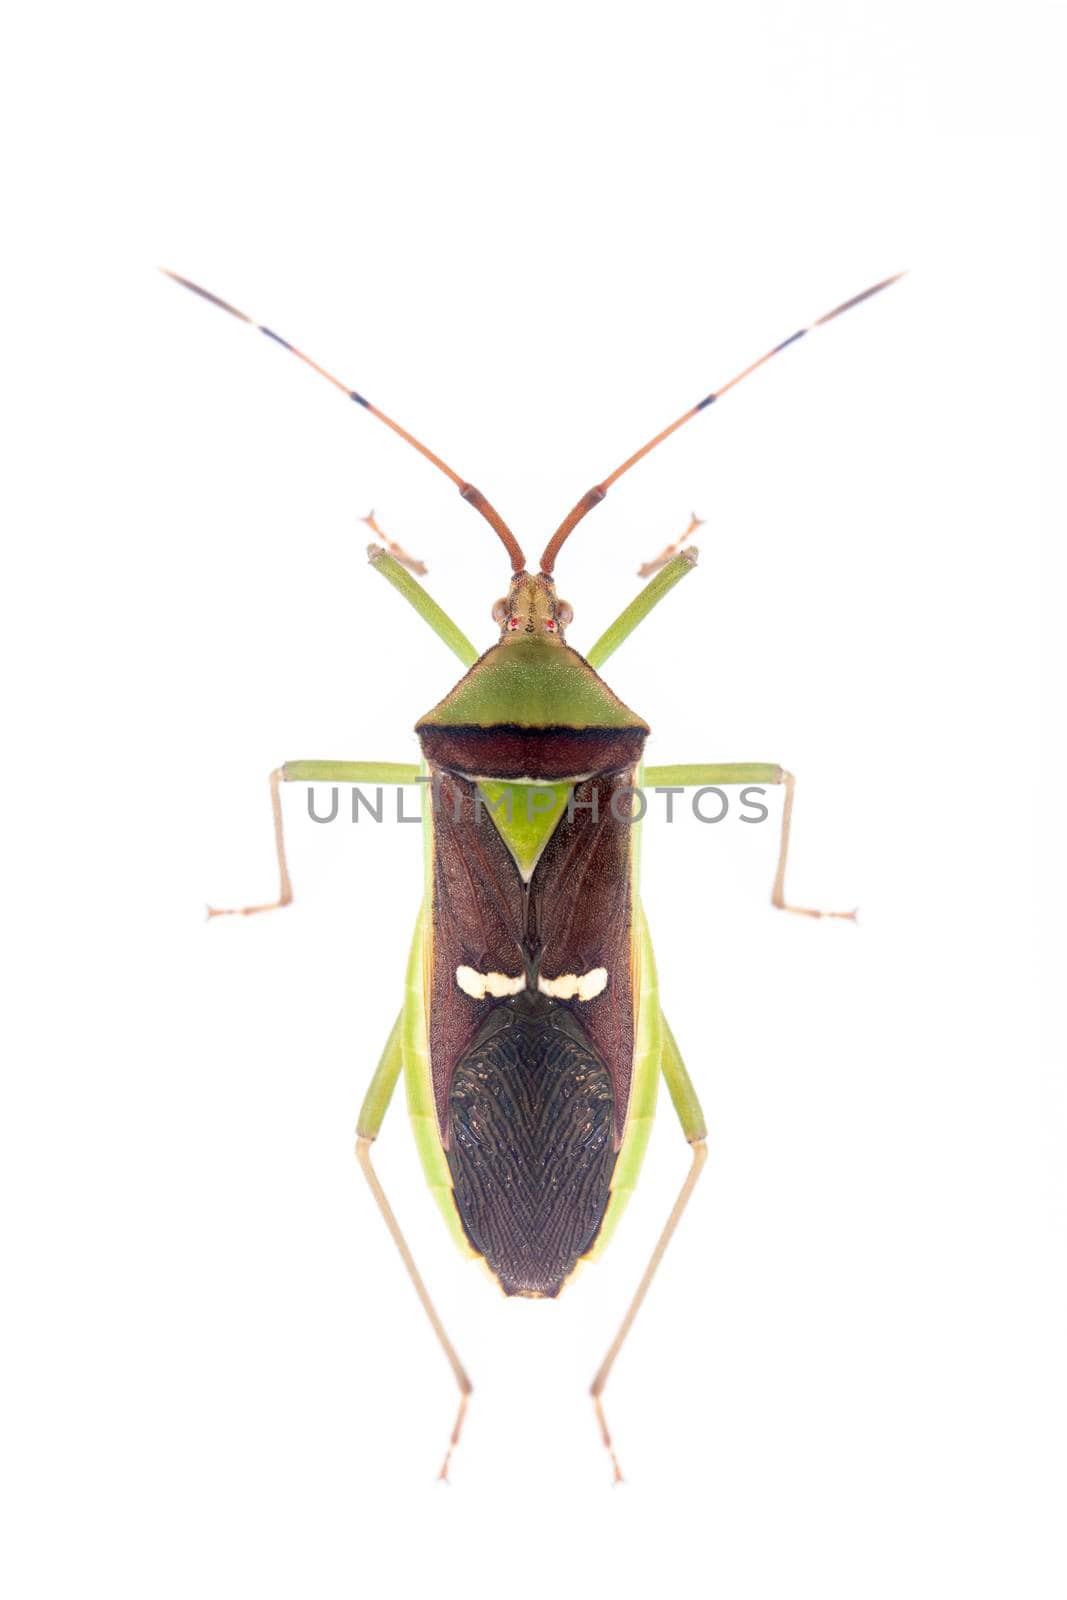 Image of green legume pod bug(Hemiptera) isolated on white background. Animal. Insect.